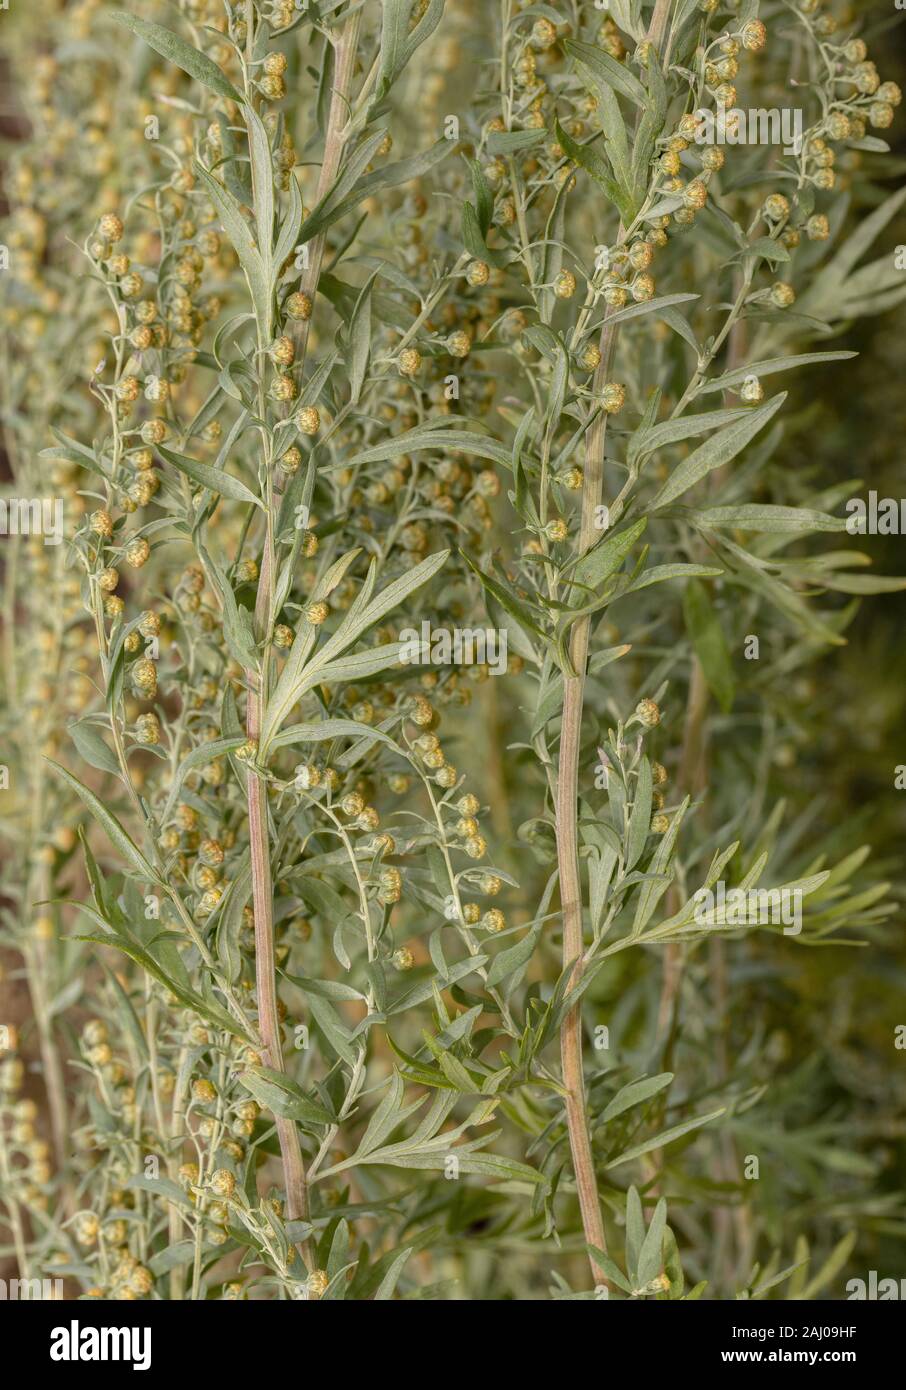 Ajenjo, Artemisia absinthium, en flor. Plantas medicinales y ornamentales. Foto de stock